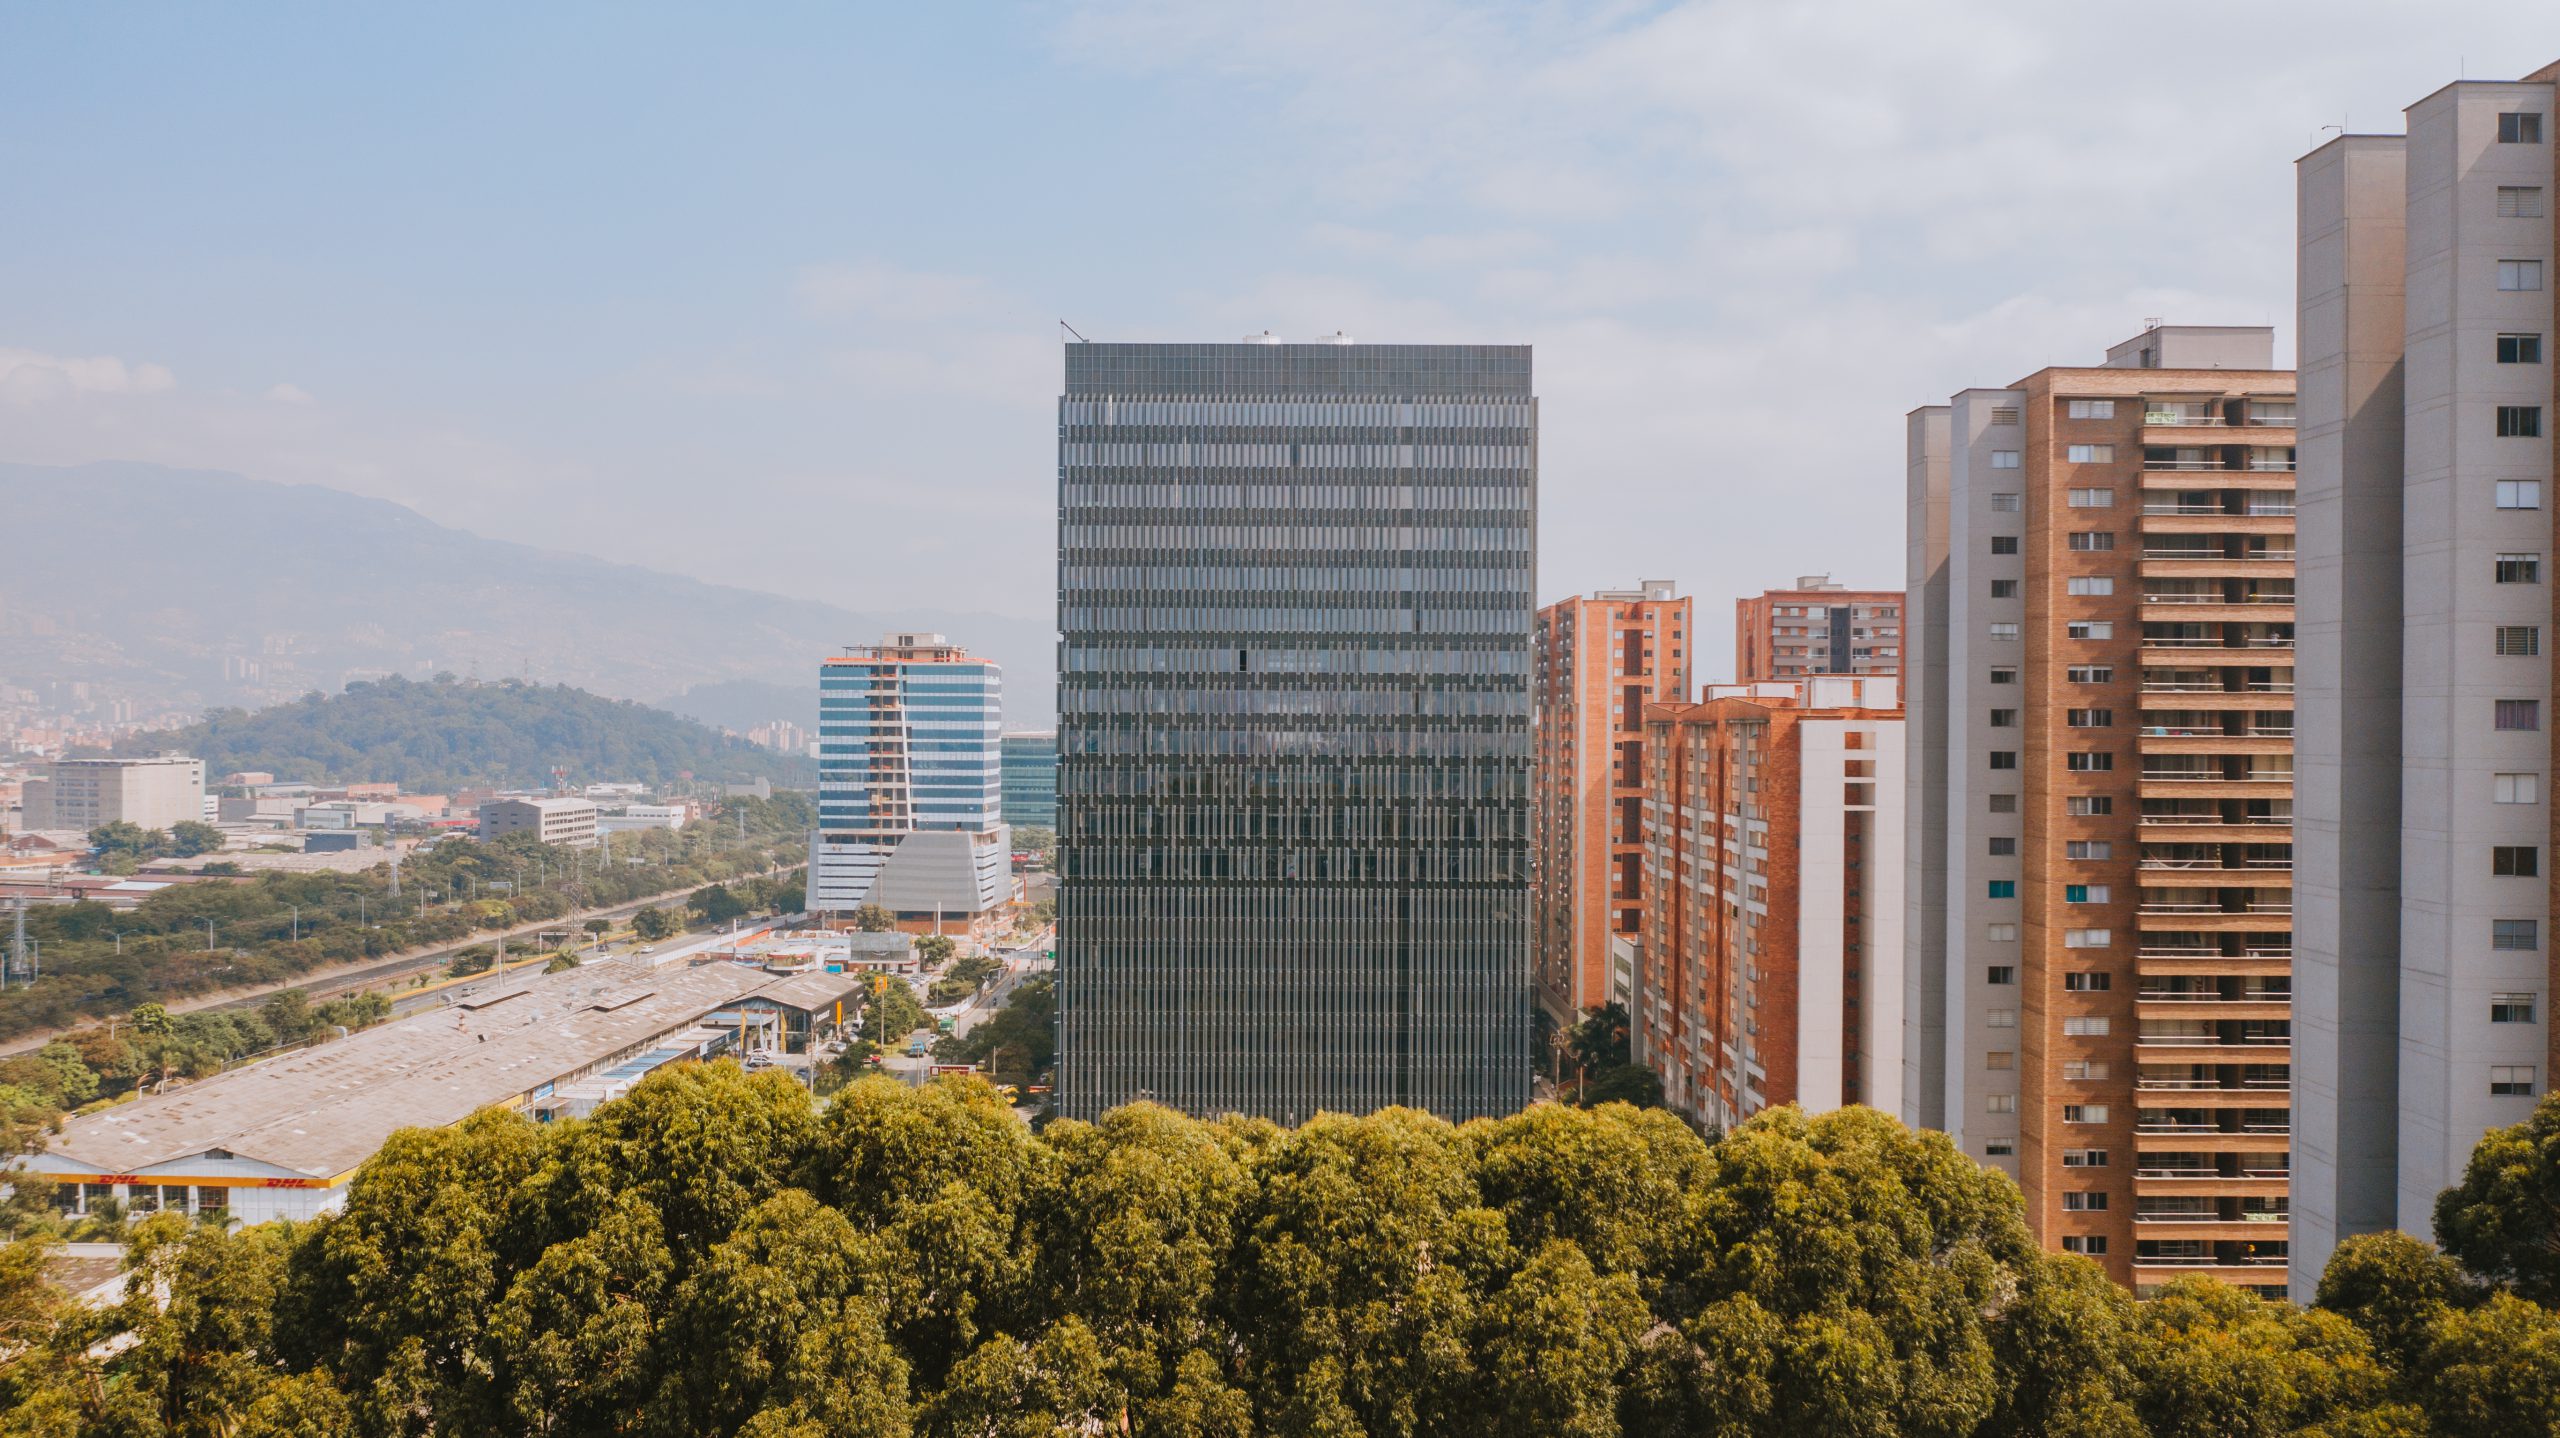 Arquitectura fragmentada: este es el nuevo y sorprendente edificio de Ciudad del Río, Medellín